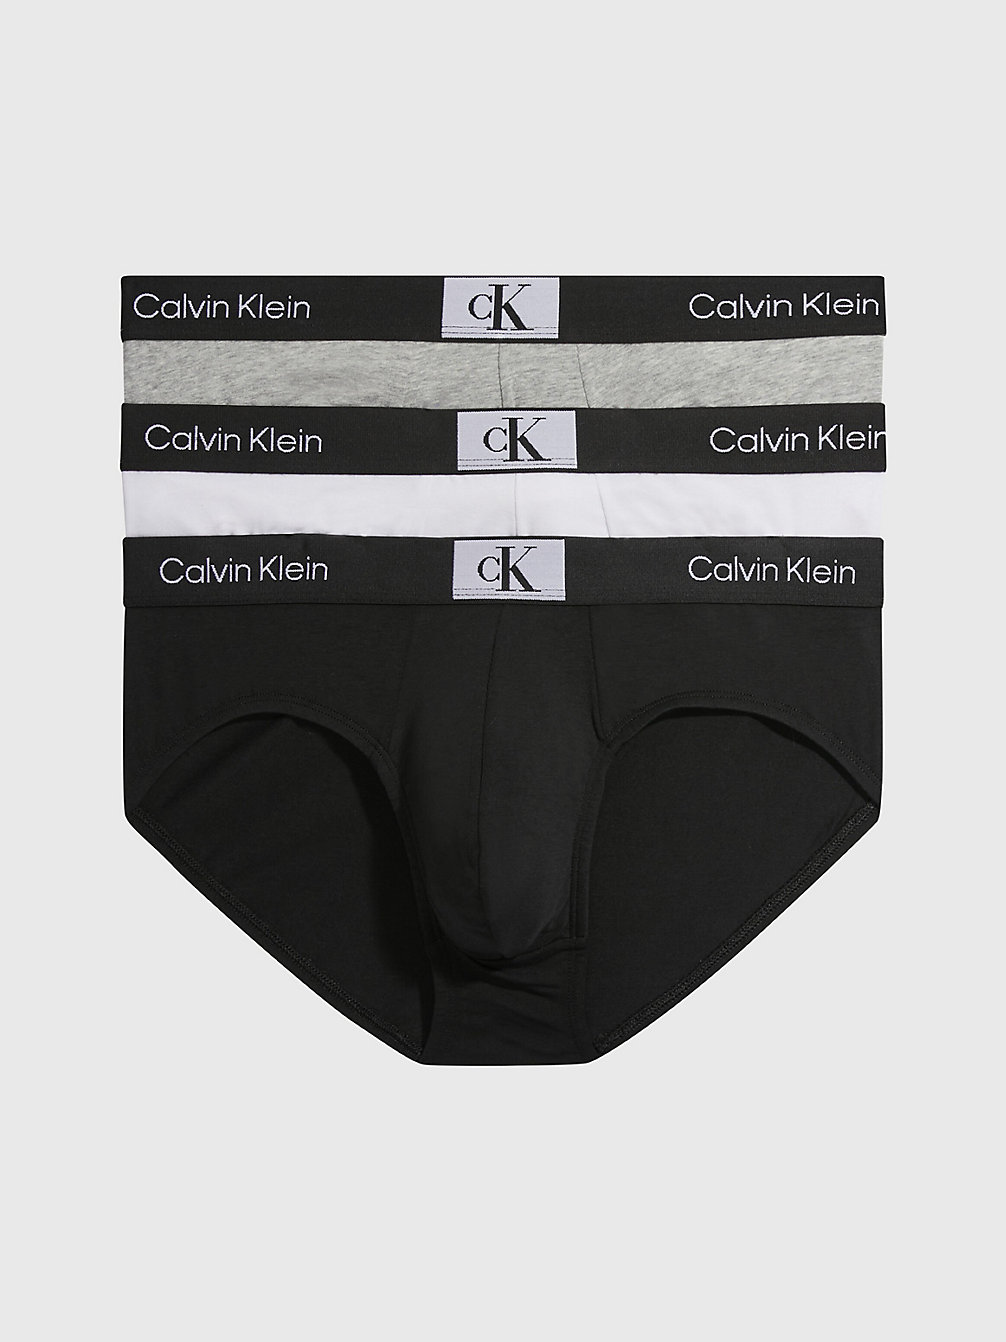 BLACK/WHITE/GREY HEATHER > 3er-Pack Slips - Ck96 > undefined Herren - Calvin Klein